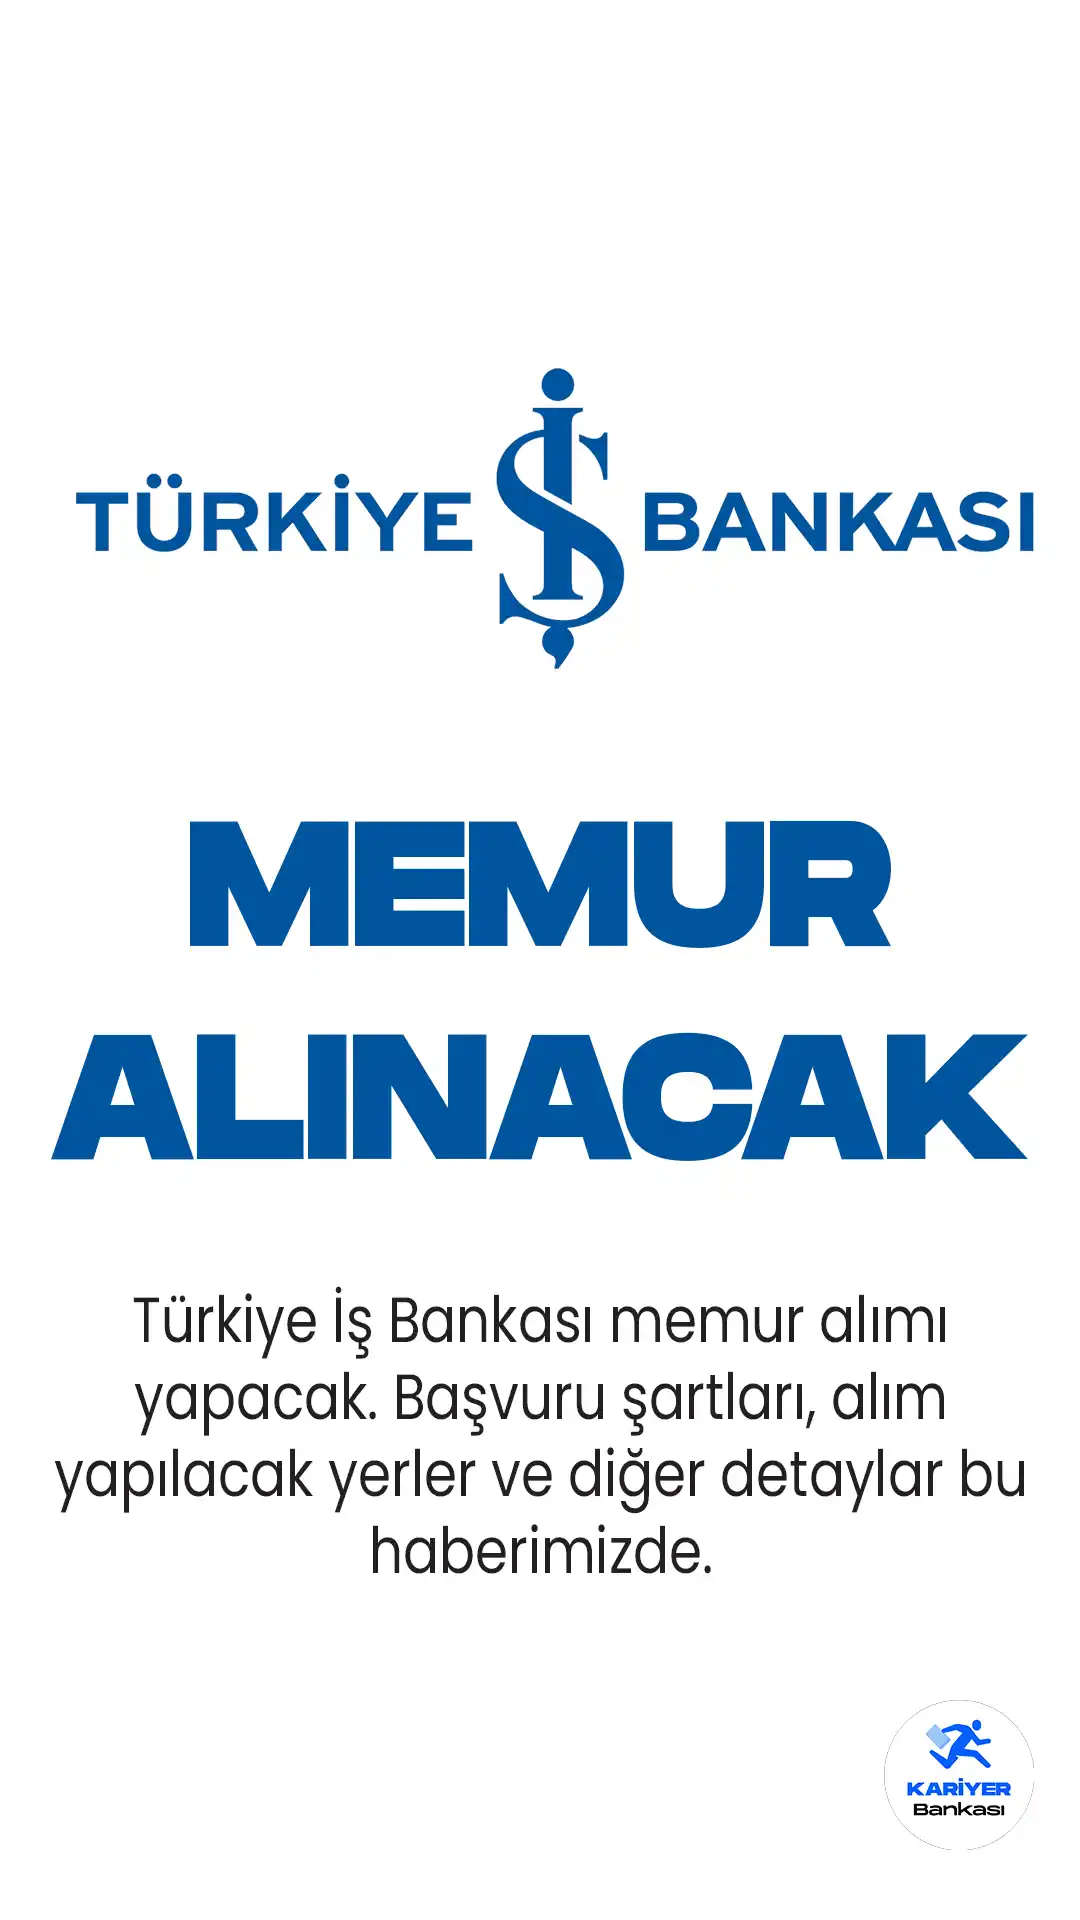 Türkiye İş Bankası memur alımı için başvuru işlemleri 15 Mayıs'a kadar sürecek. Başvuru şartları , tarihler ve sayfası bu haberimizde.